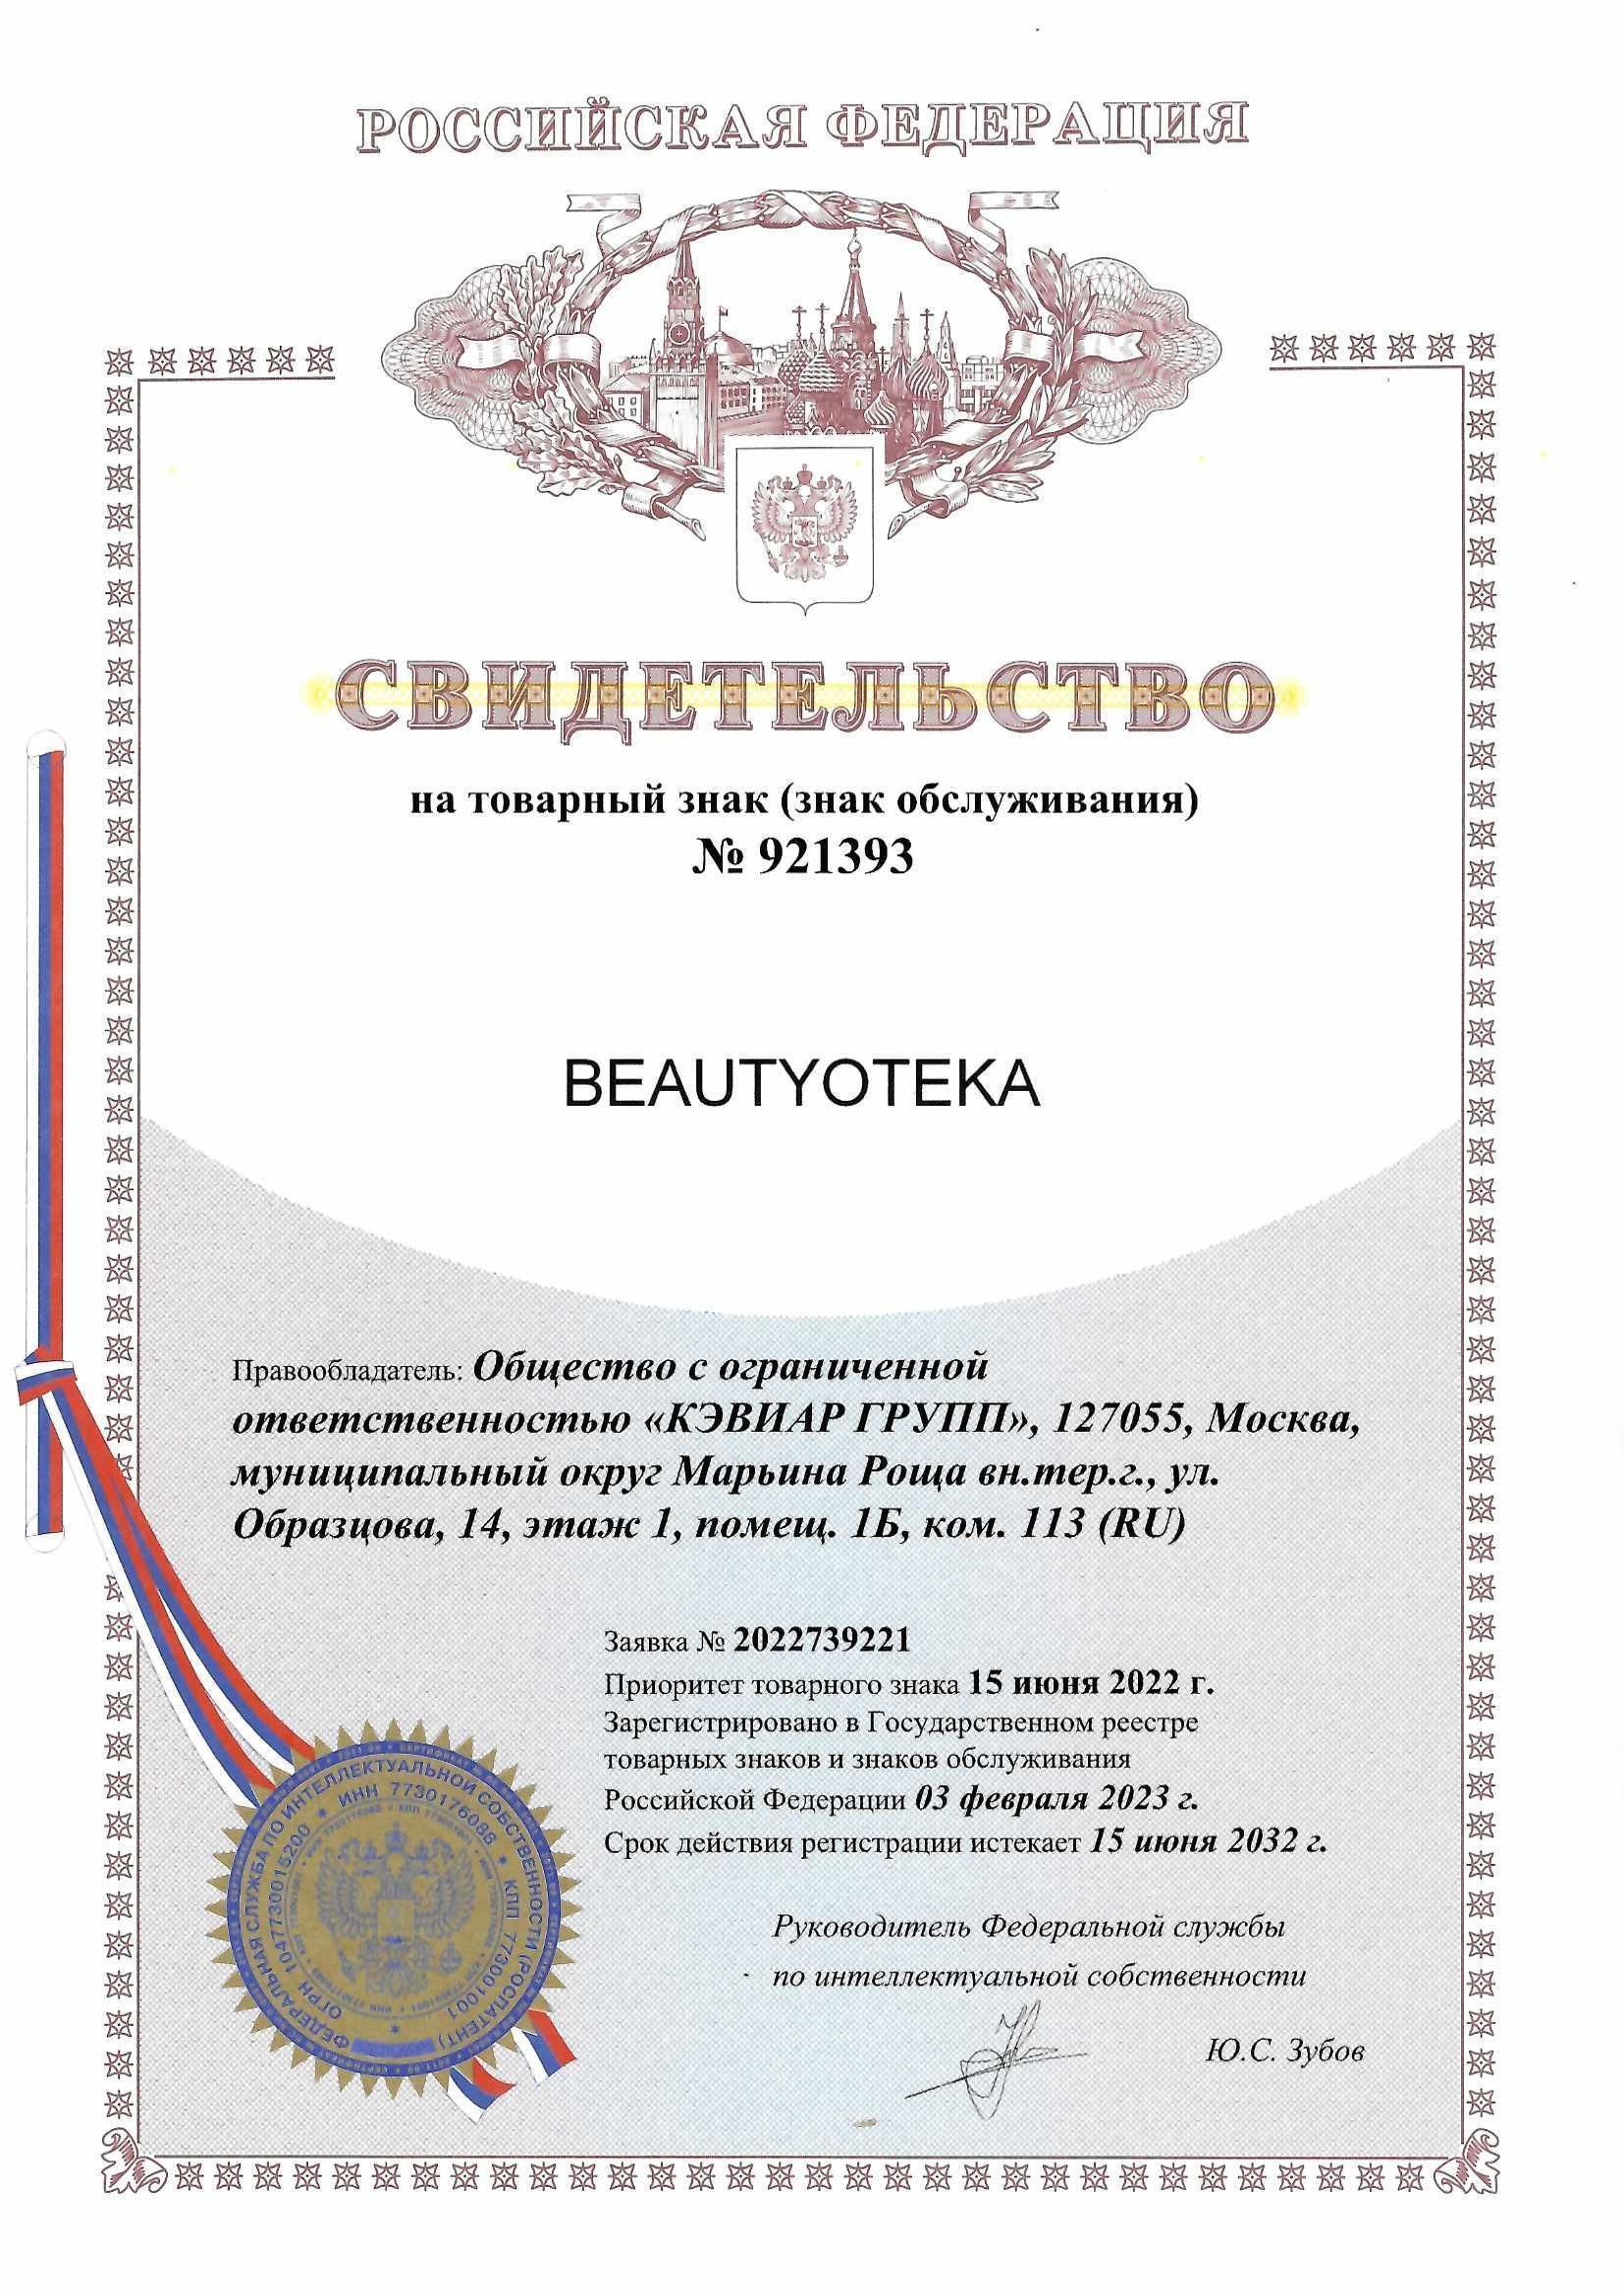 Товарный знак № 921393 – Beautyteka